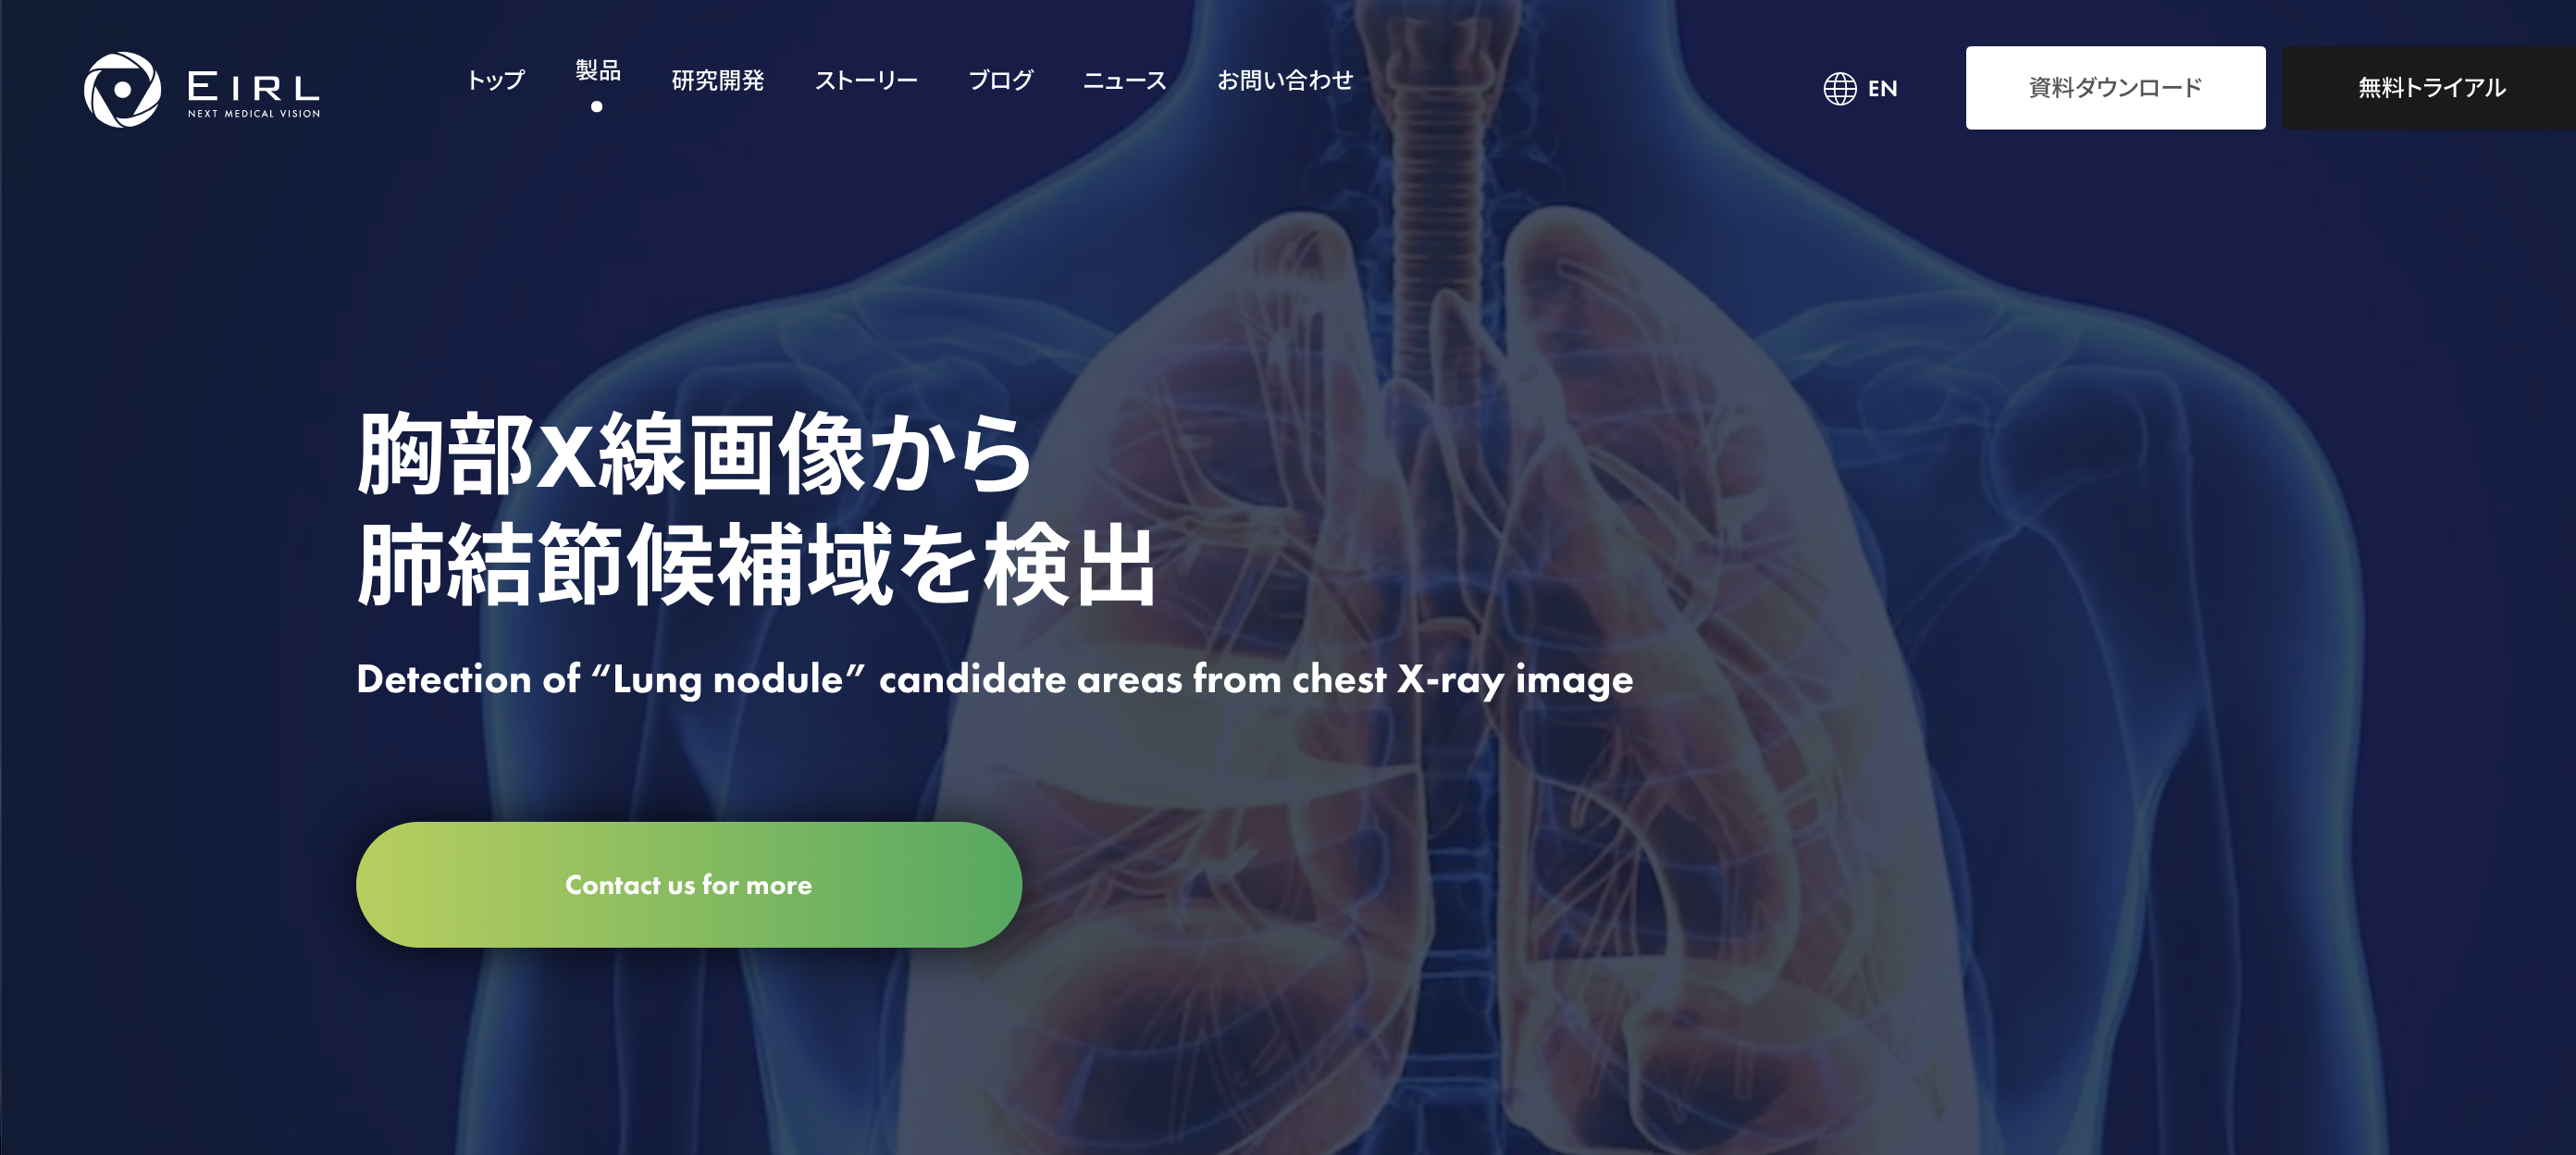 https://clinic-yamauchi.com/wp/wp-content/uploads/2021/11/スクリーンショット-2021-11-24-21.58.38.png